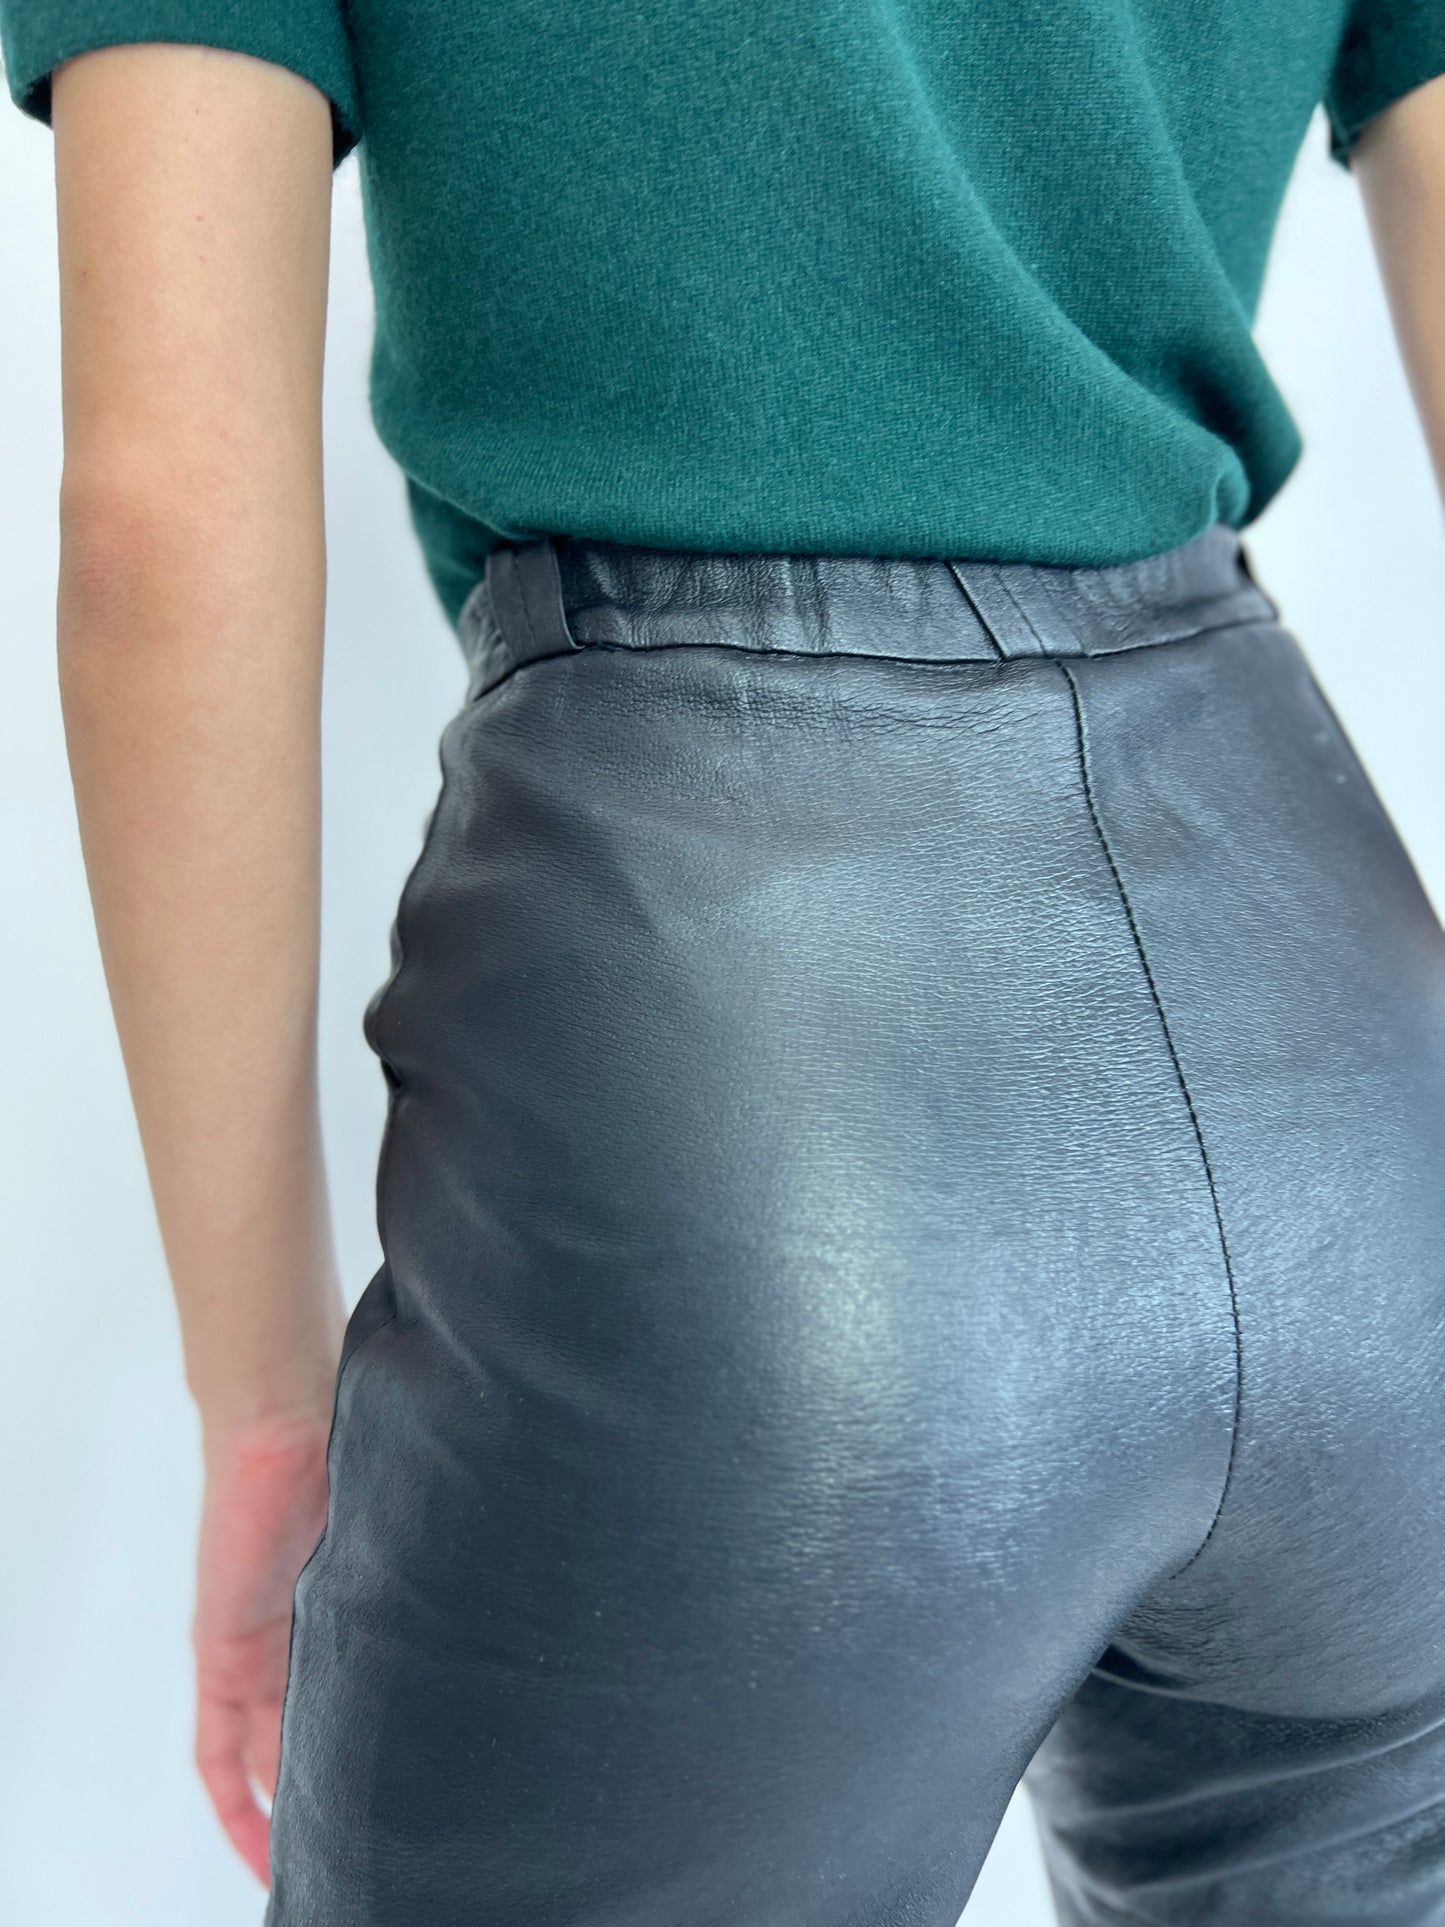 Pantaloni din piele naturală extramoale cu talie elastică